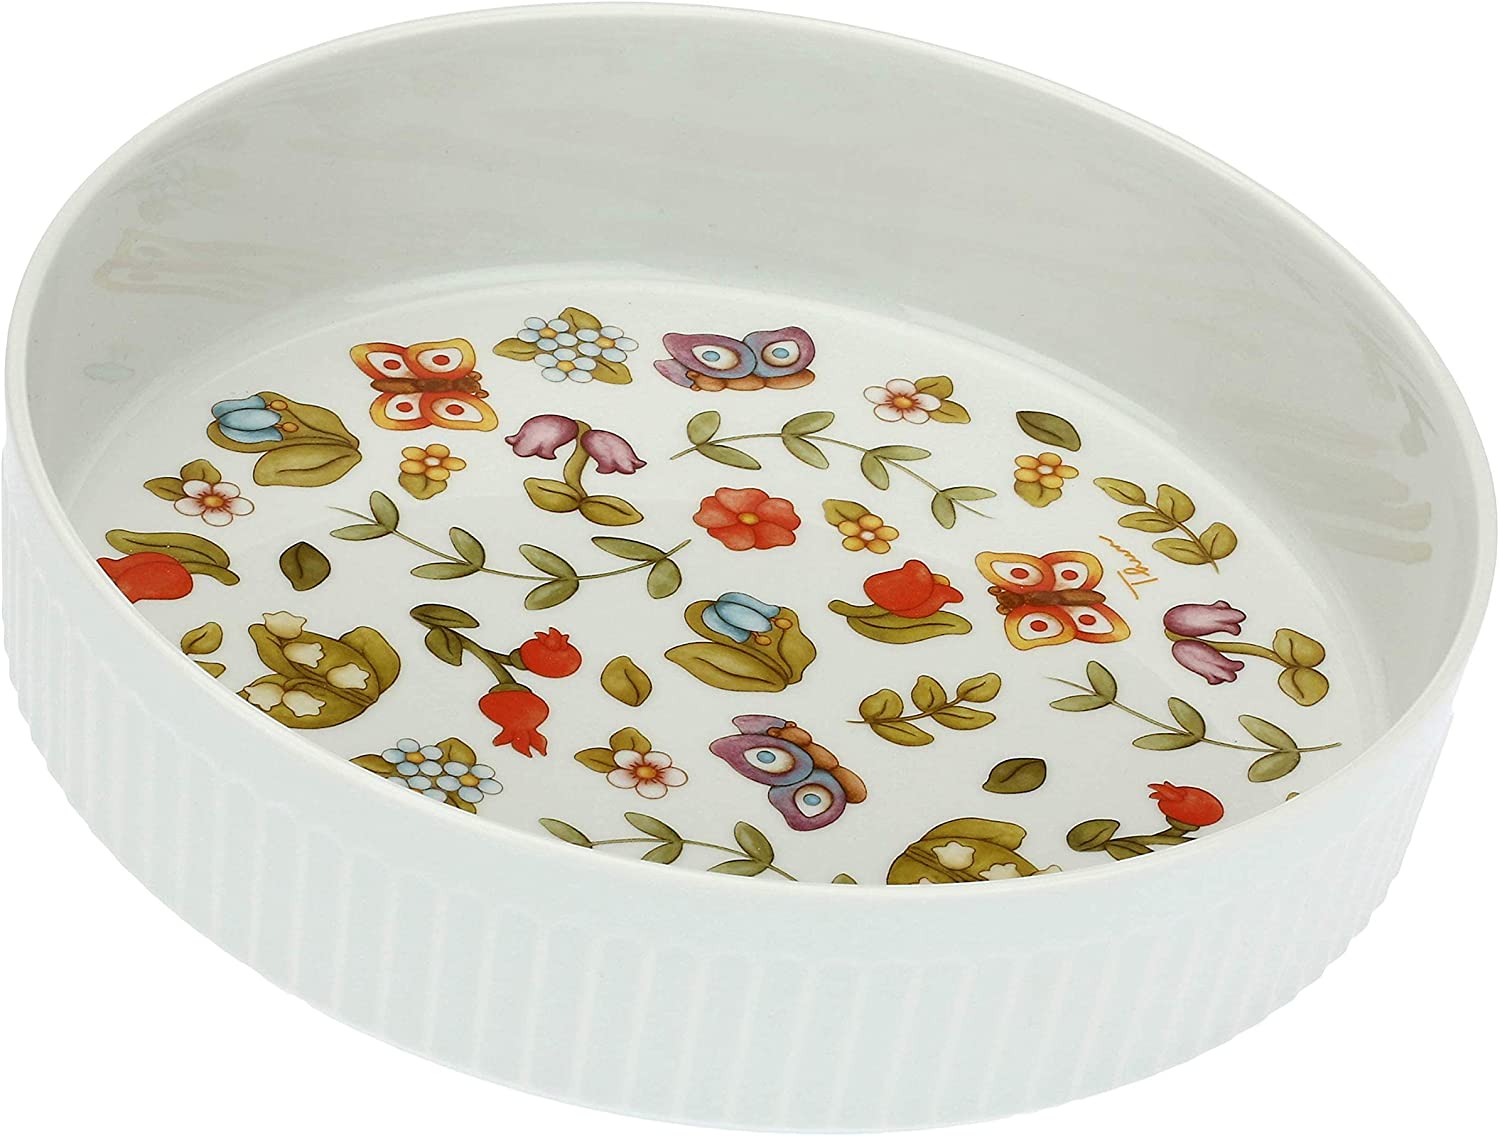 THUN - Tortiera Tonda Bianca con Decorazione di Fiori e Farfalle, Ideale Come Teglia per Crostata - Accessori Cucina